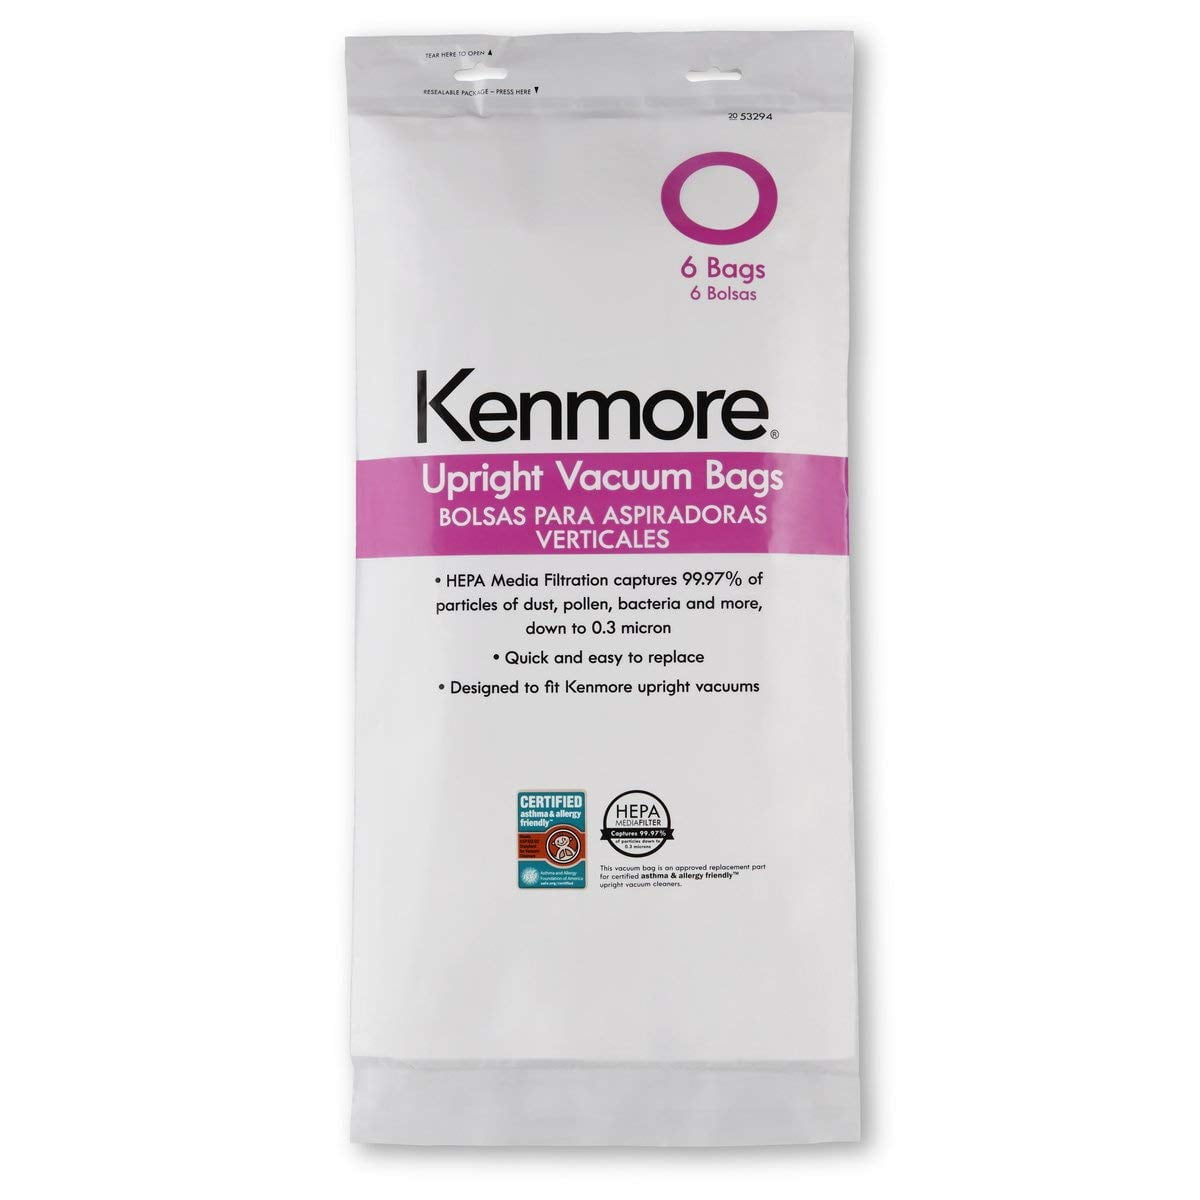 Kenmore Vacuum Bags O 53294 6 Bags 